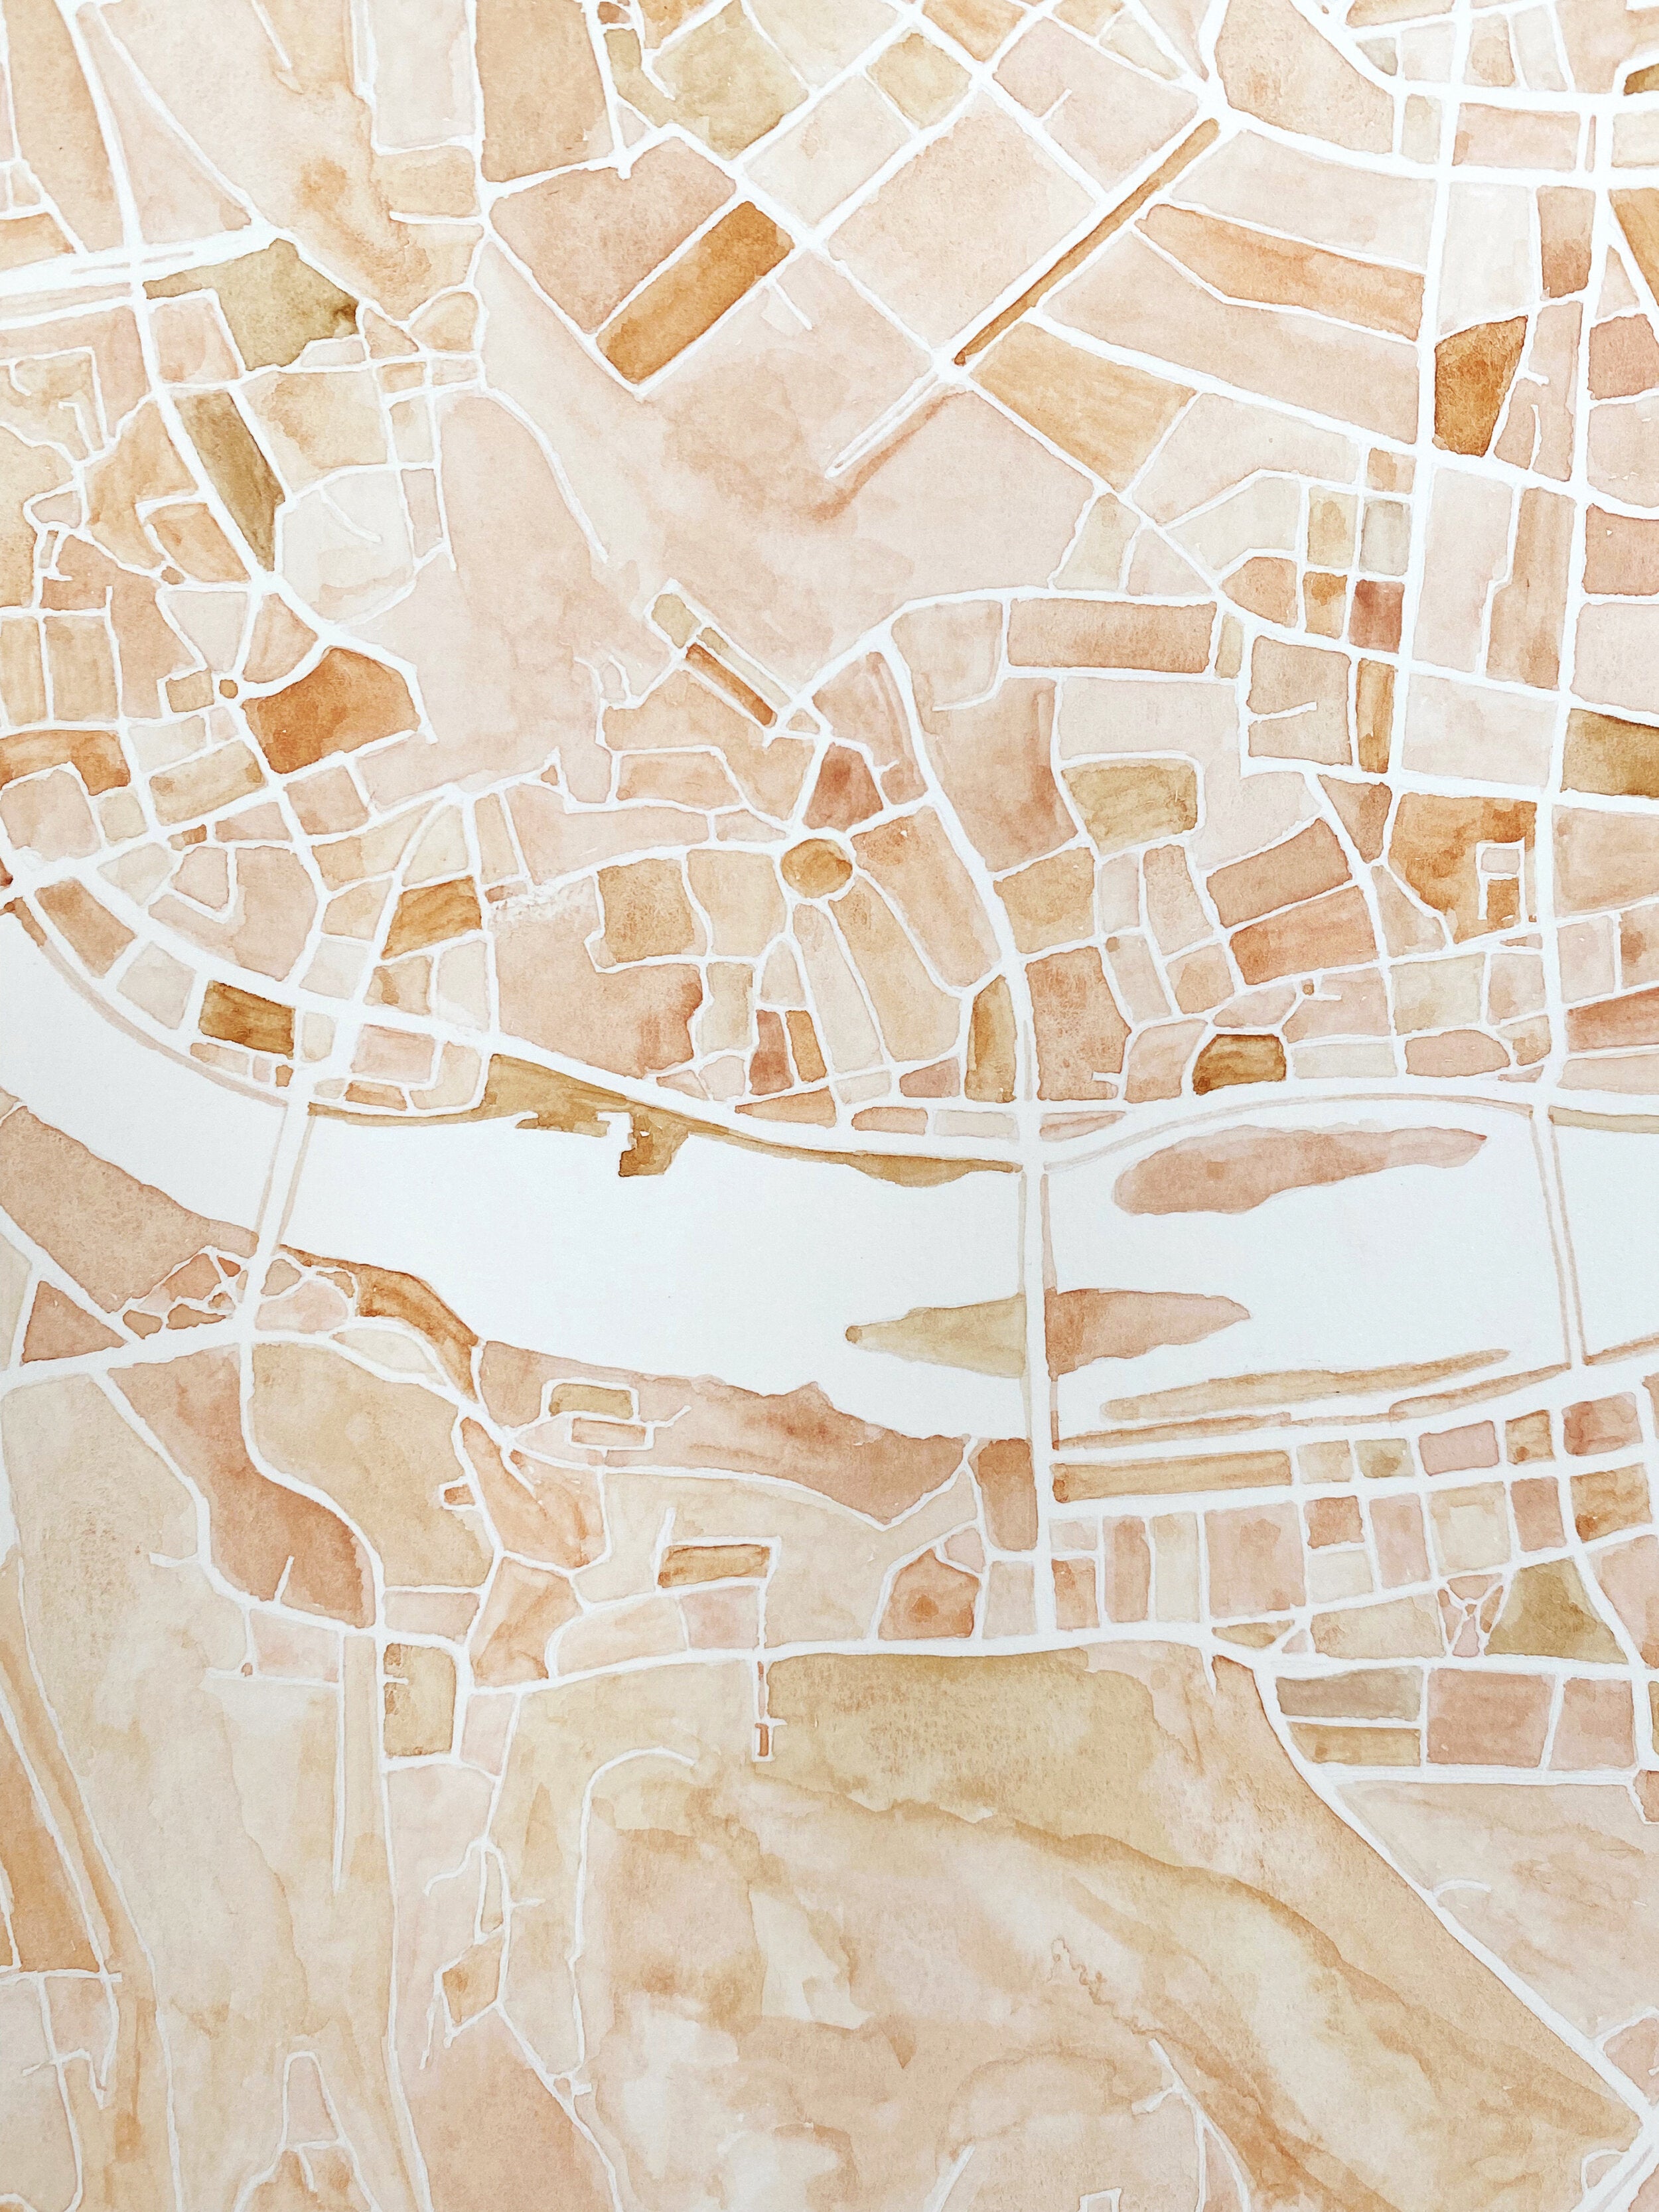 PRAGUE Watercolor City Blocks Map: ORIGINAL PAINTING